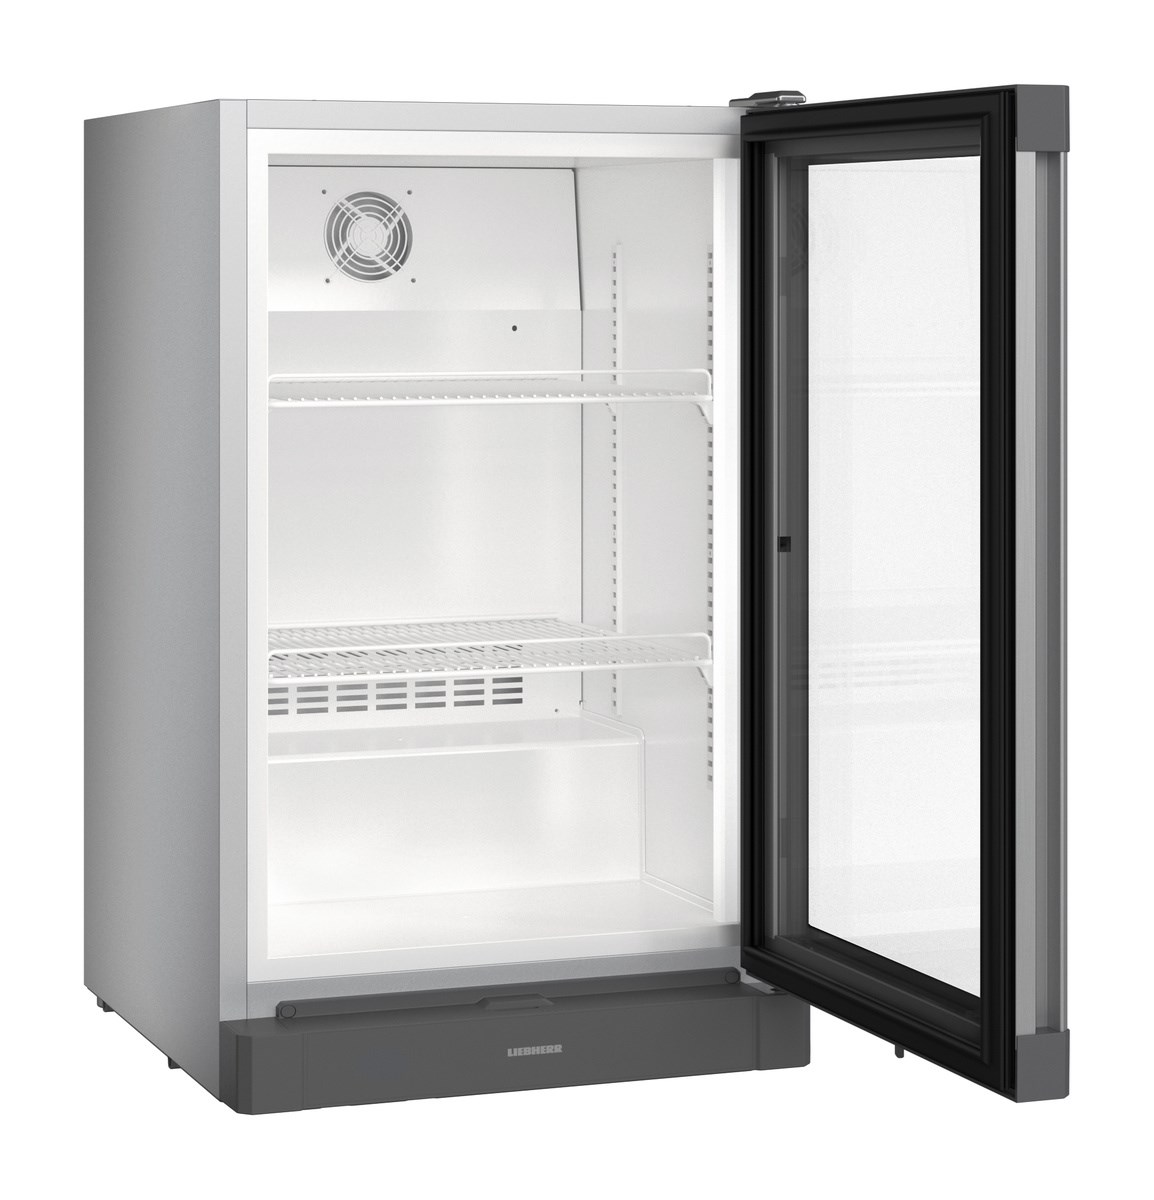 BCv1103-Premium - Vitrínová chladnička s ventilovaným chladením